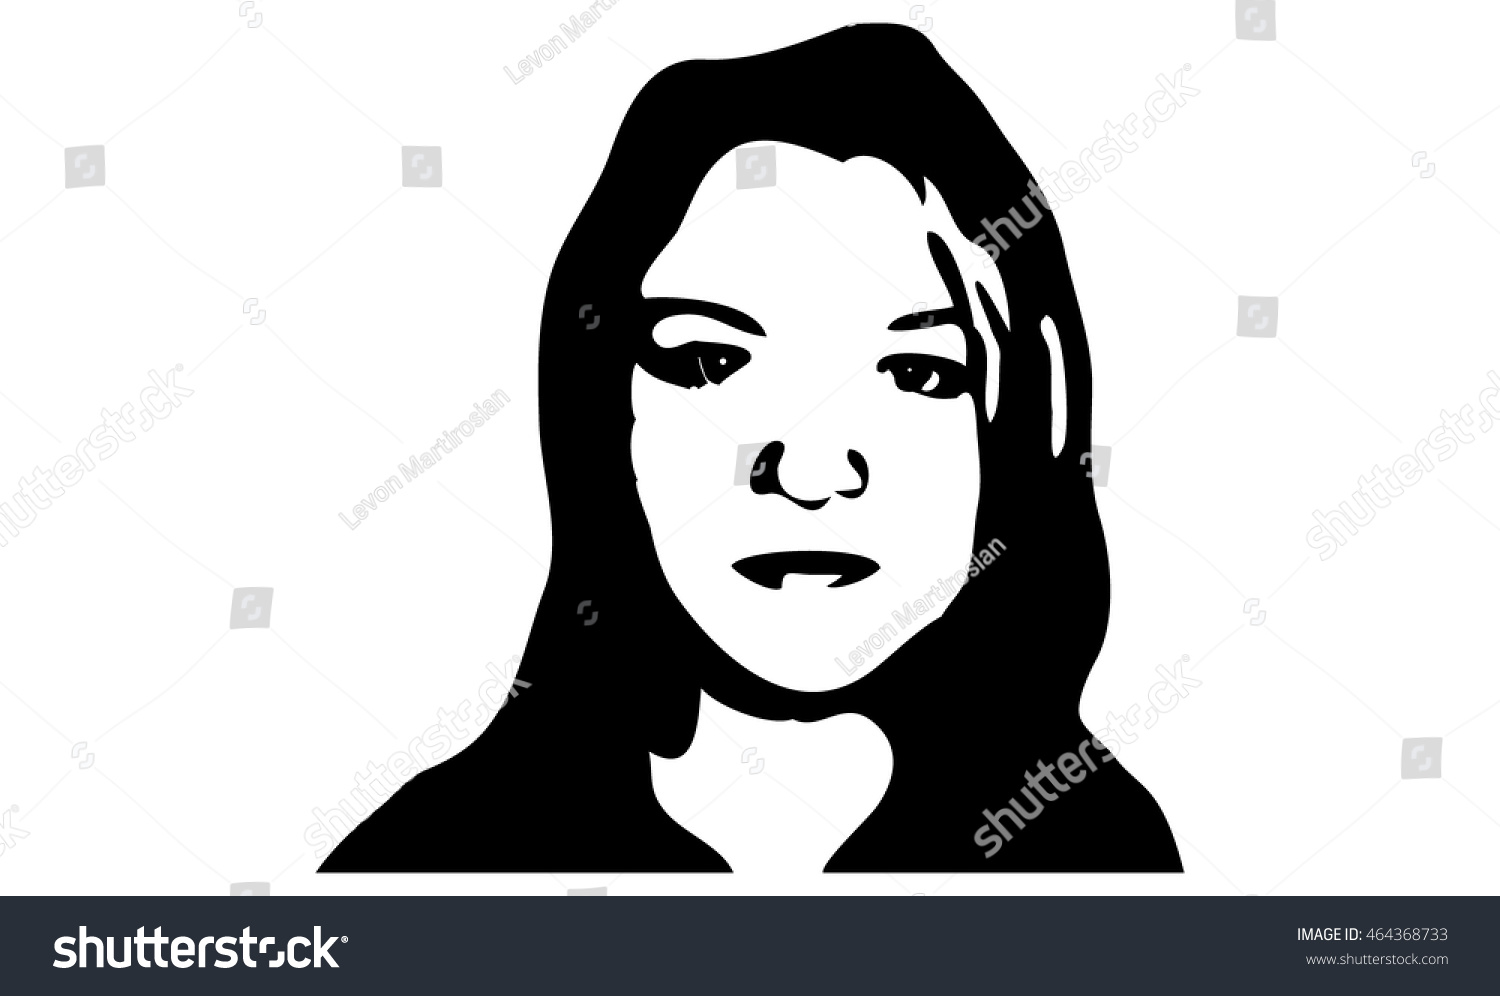 Graffiti stencil face. Young woman graffiti stencil face. Vector art. #464368733